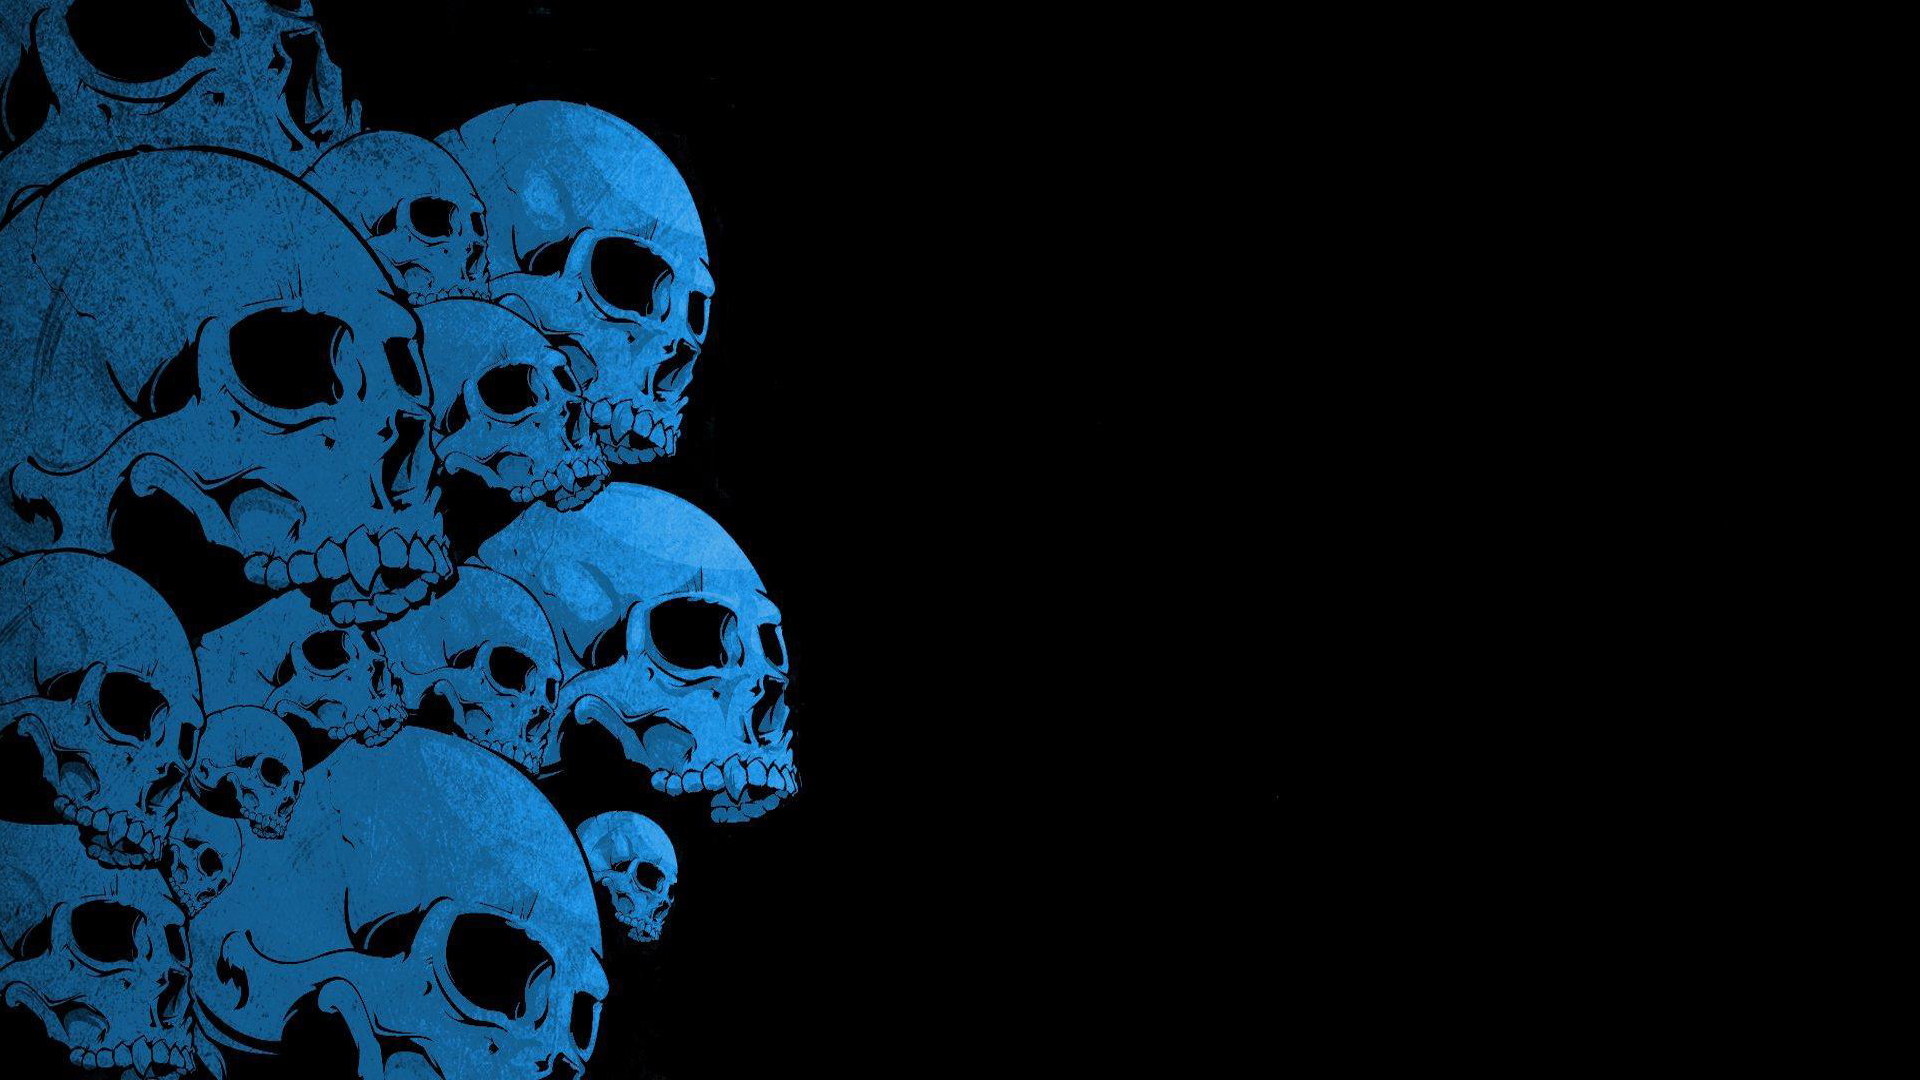 Wall Of Skulls Wallpaper Myspace